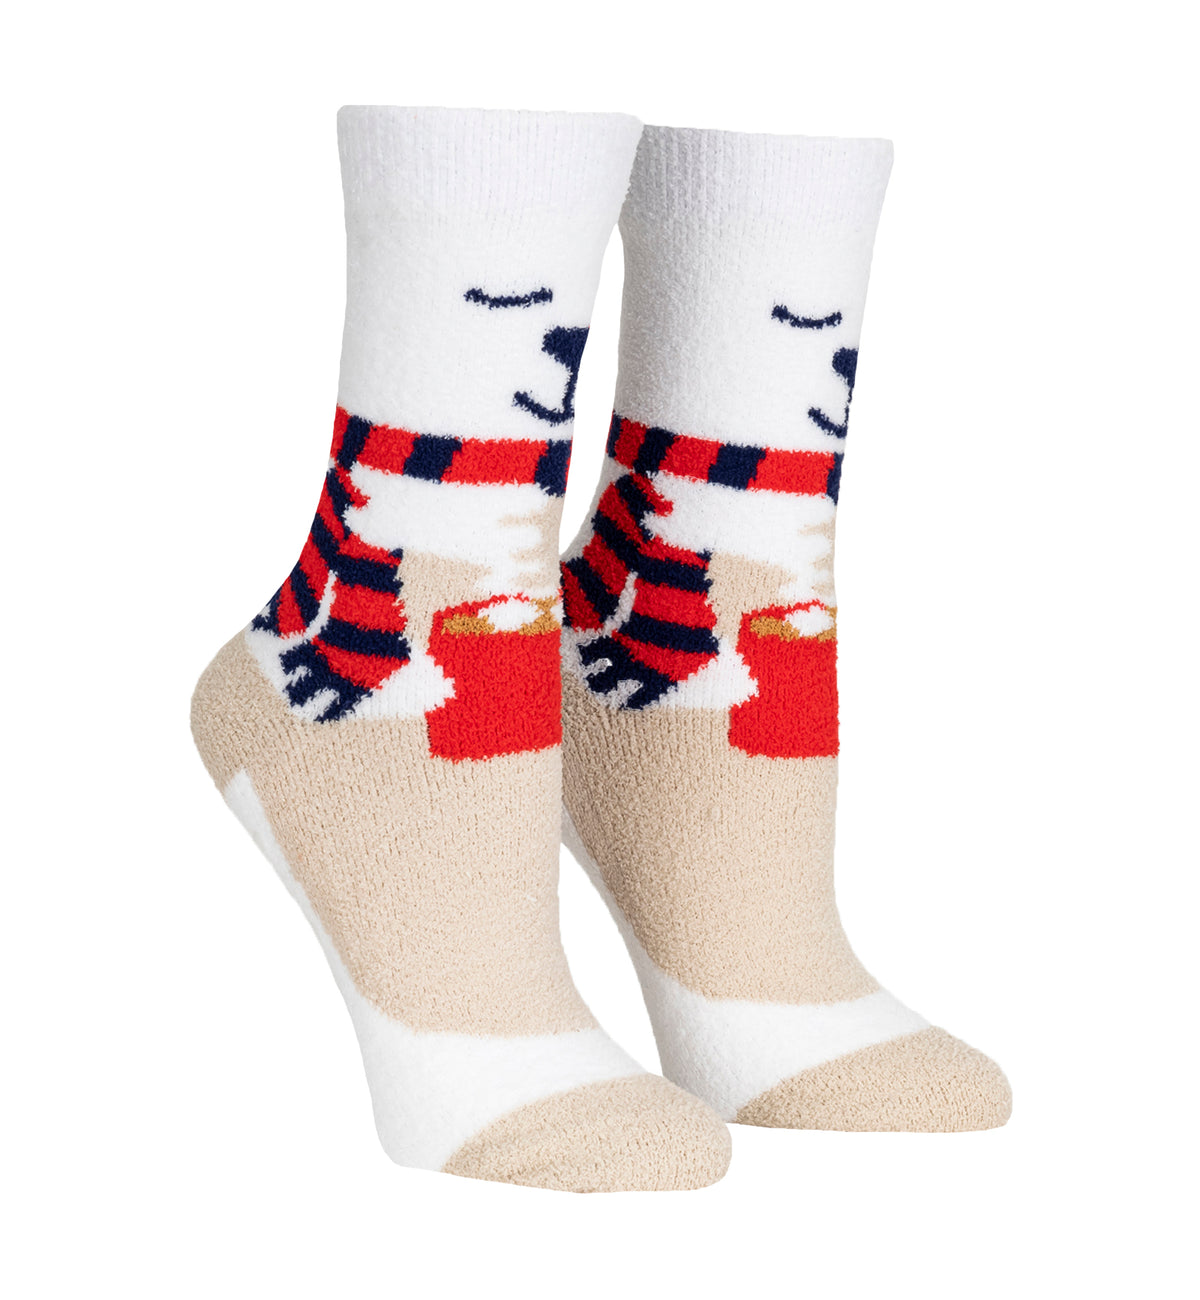 SOCK it to me Slipper Socks (CZ0016),So Beary Cute - So Beary Cute,One Size